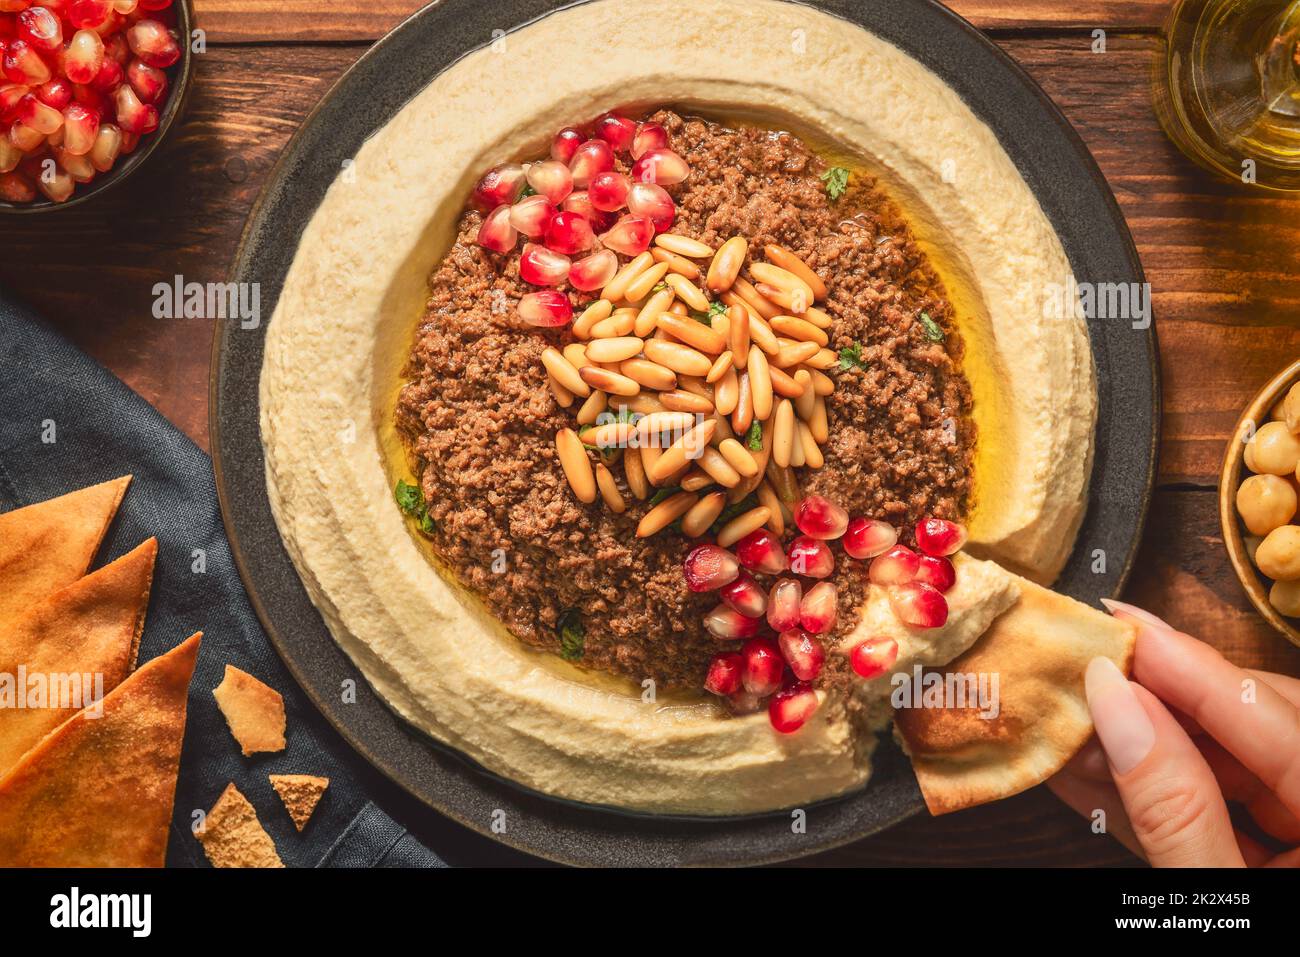 Cuisine arabe ; trempette crémeuse traditionnelle à l'houmous avec bœuf haché. Garnie d'huile d'olive, de graines de grenade fraîches, de pignons de pin rôtis et de persil. Banque D'Images